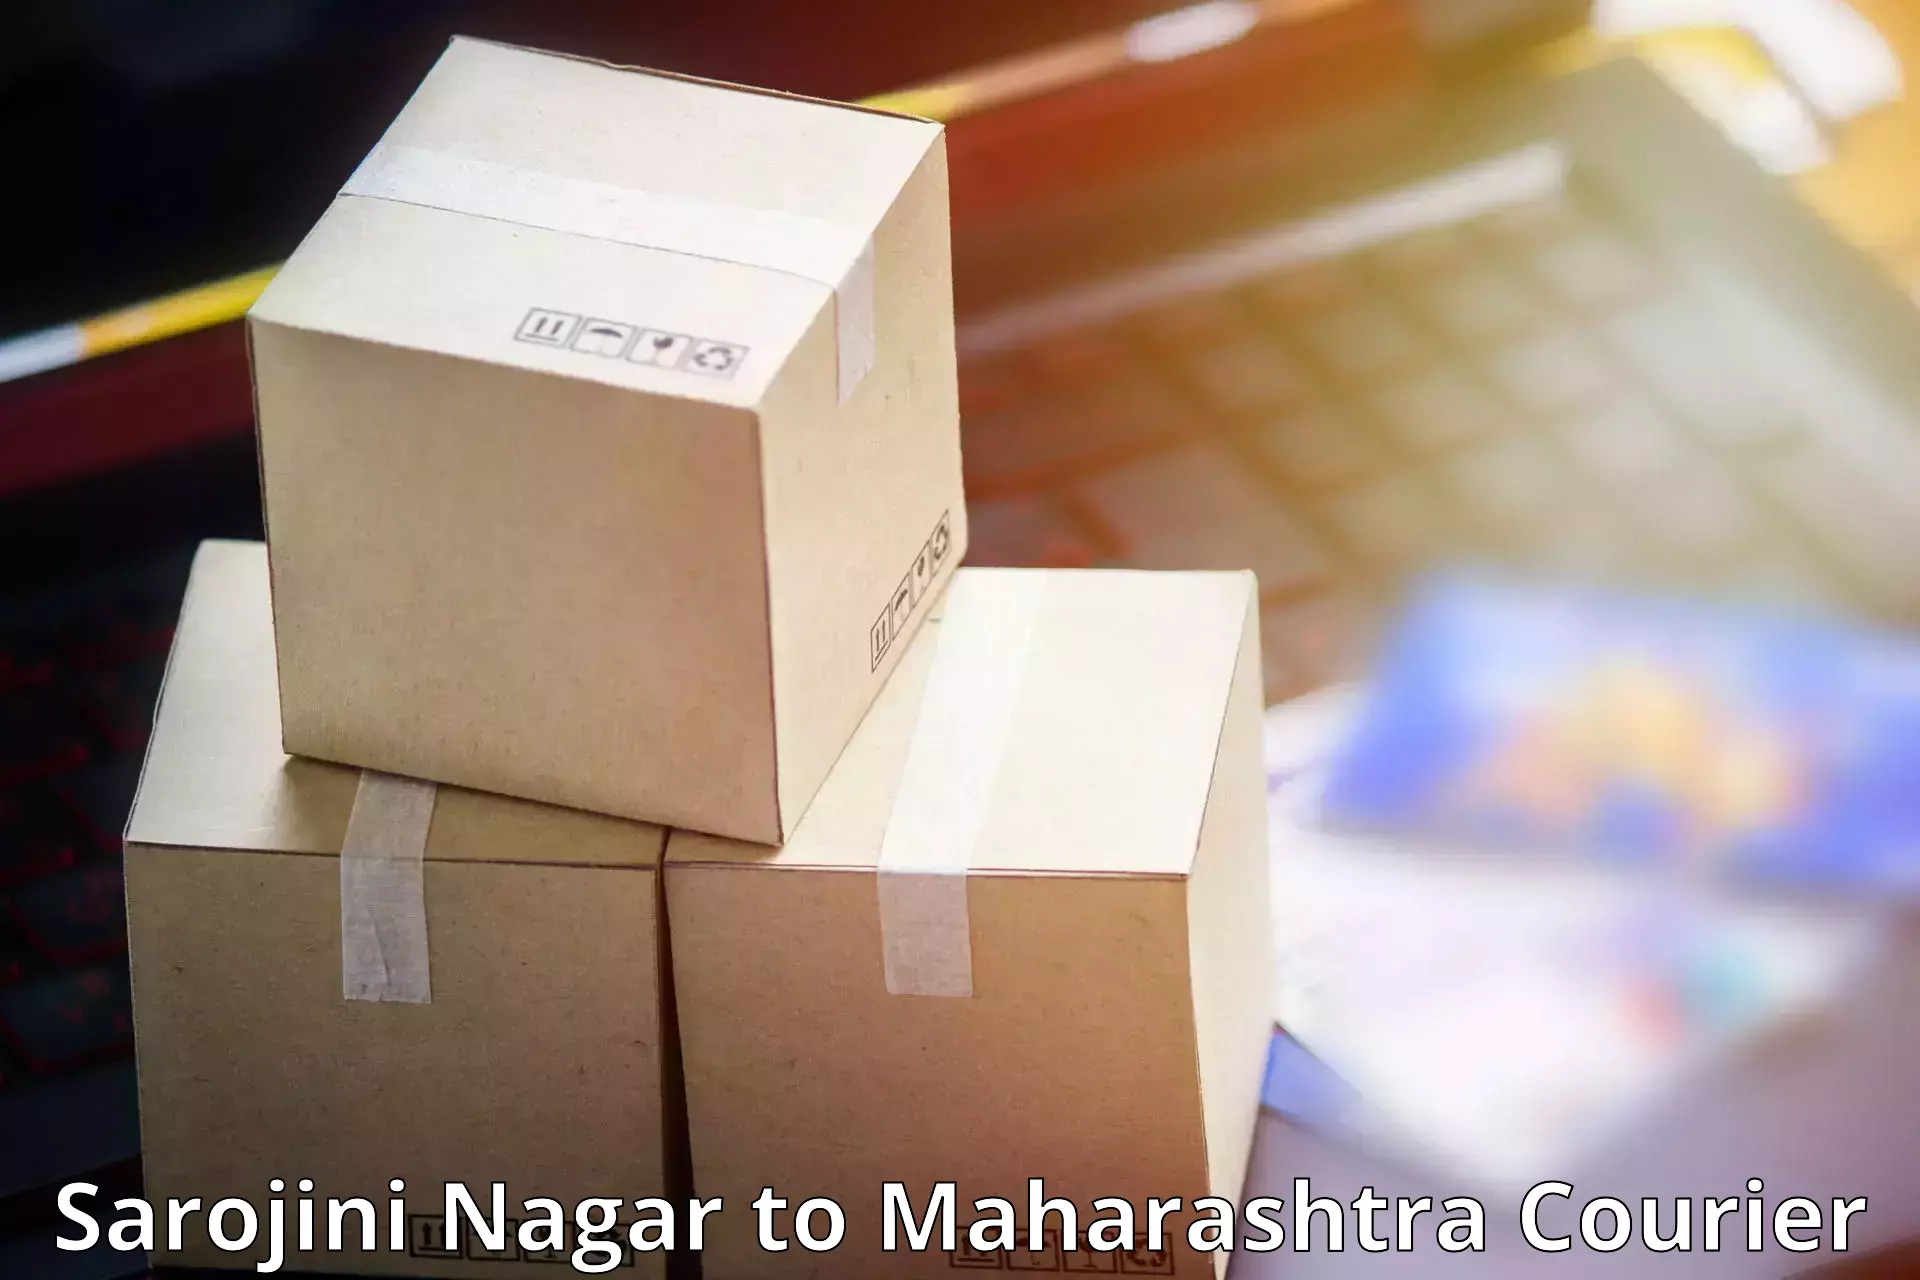 Easy access courier services Sarojini Nagar to Navi Mumbai